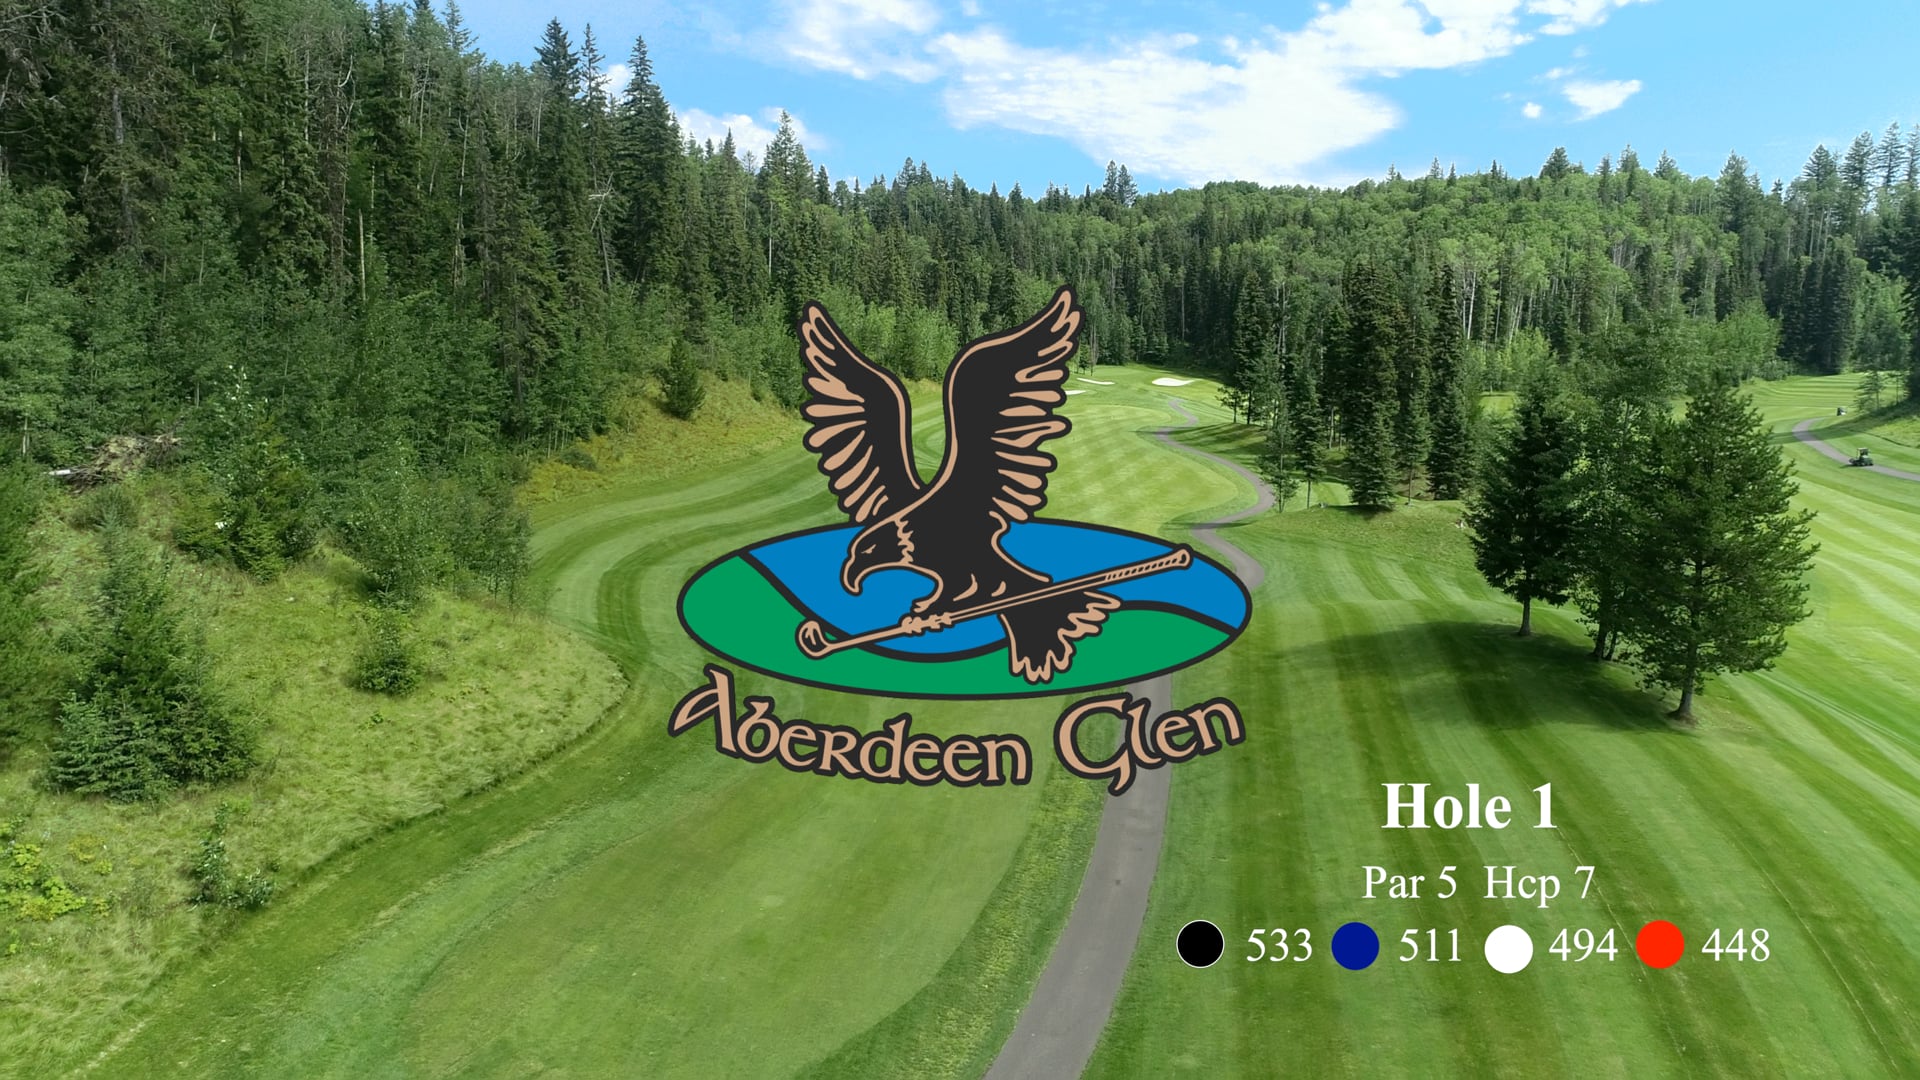 Aberdeen Glen Hole #1